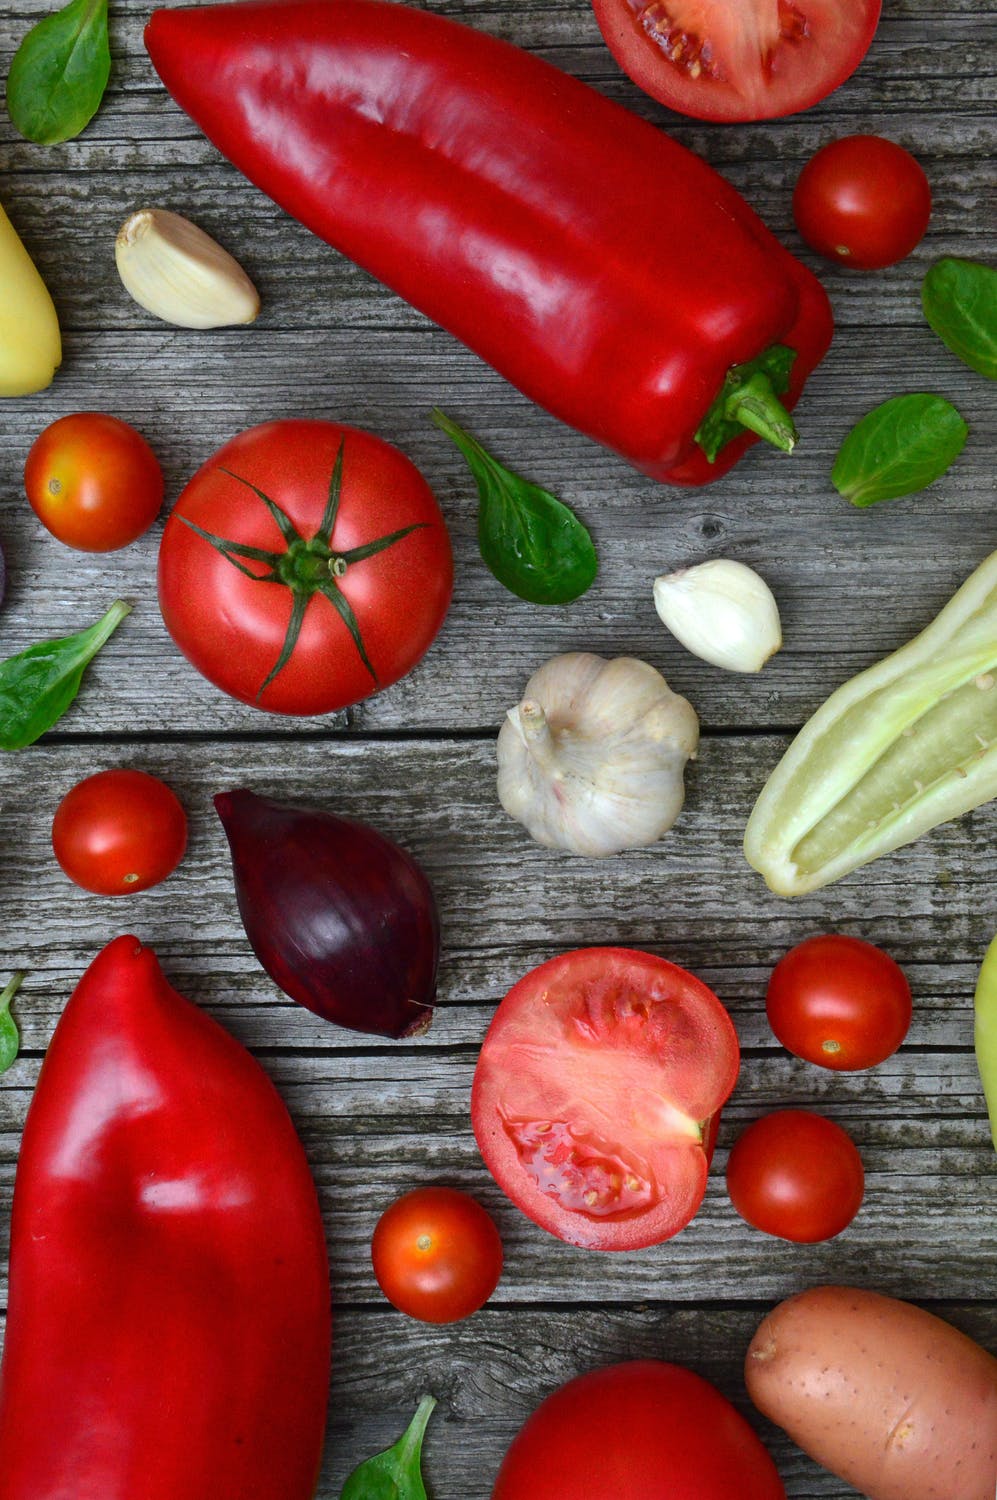 Nijanse nutrijenata: Zdrave namirnice različitih boja koje trebaju biti sastavni dio ishrane